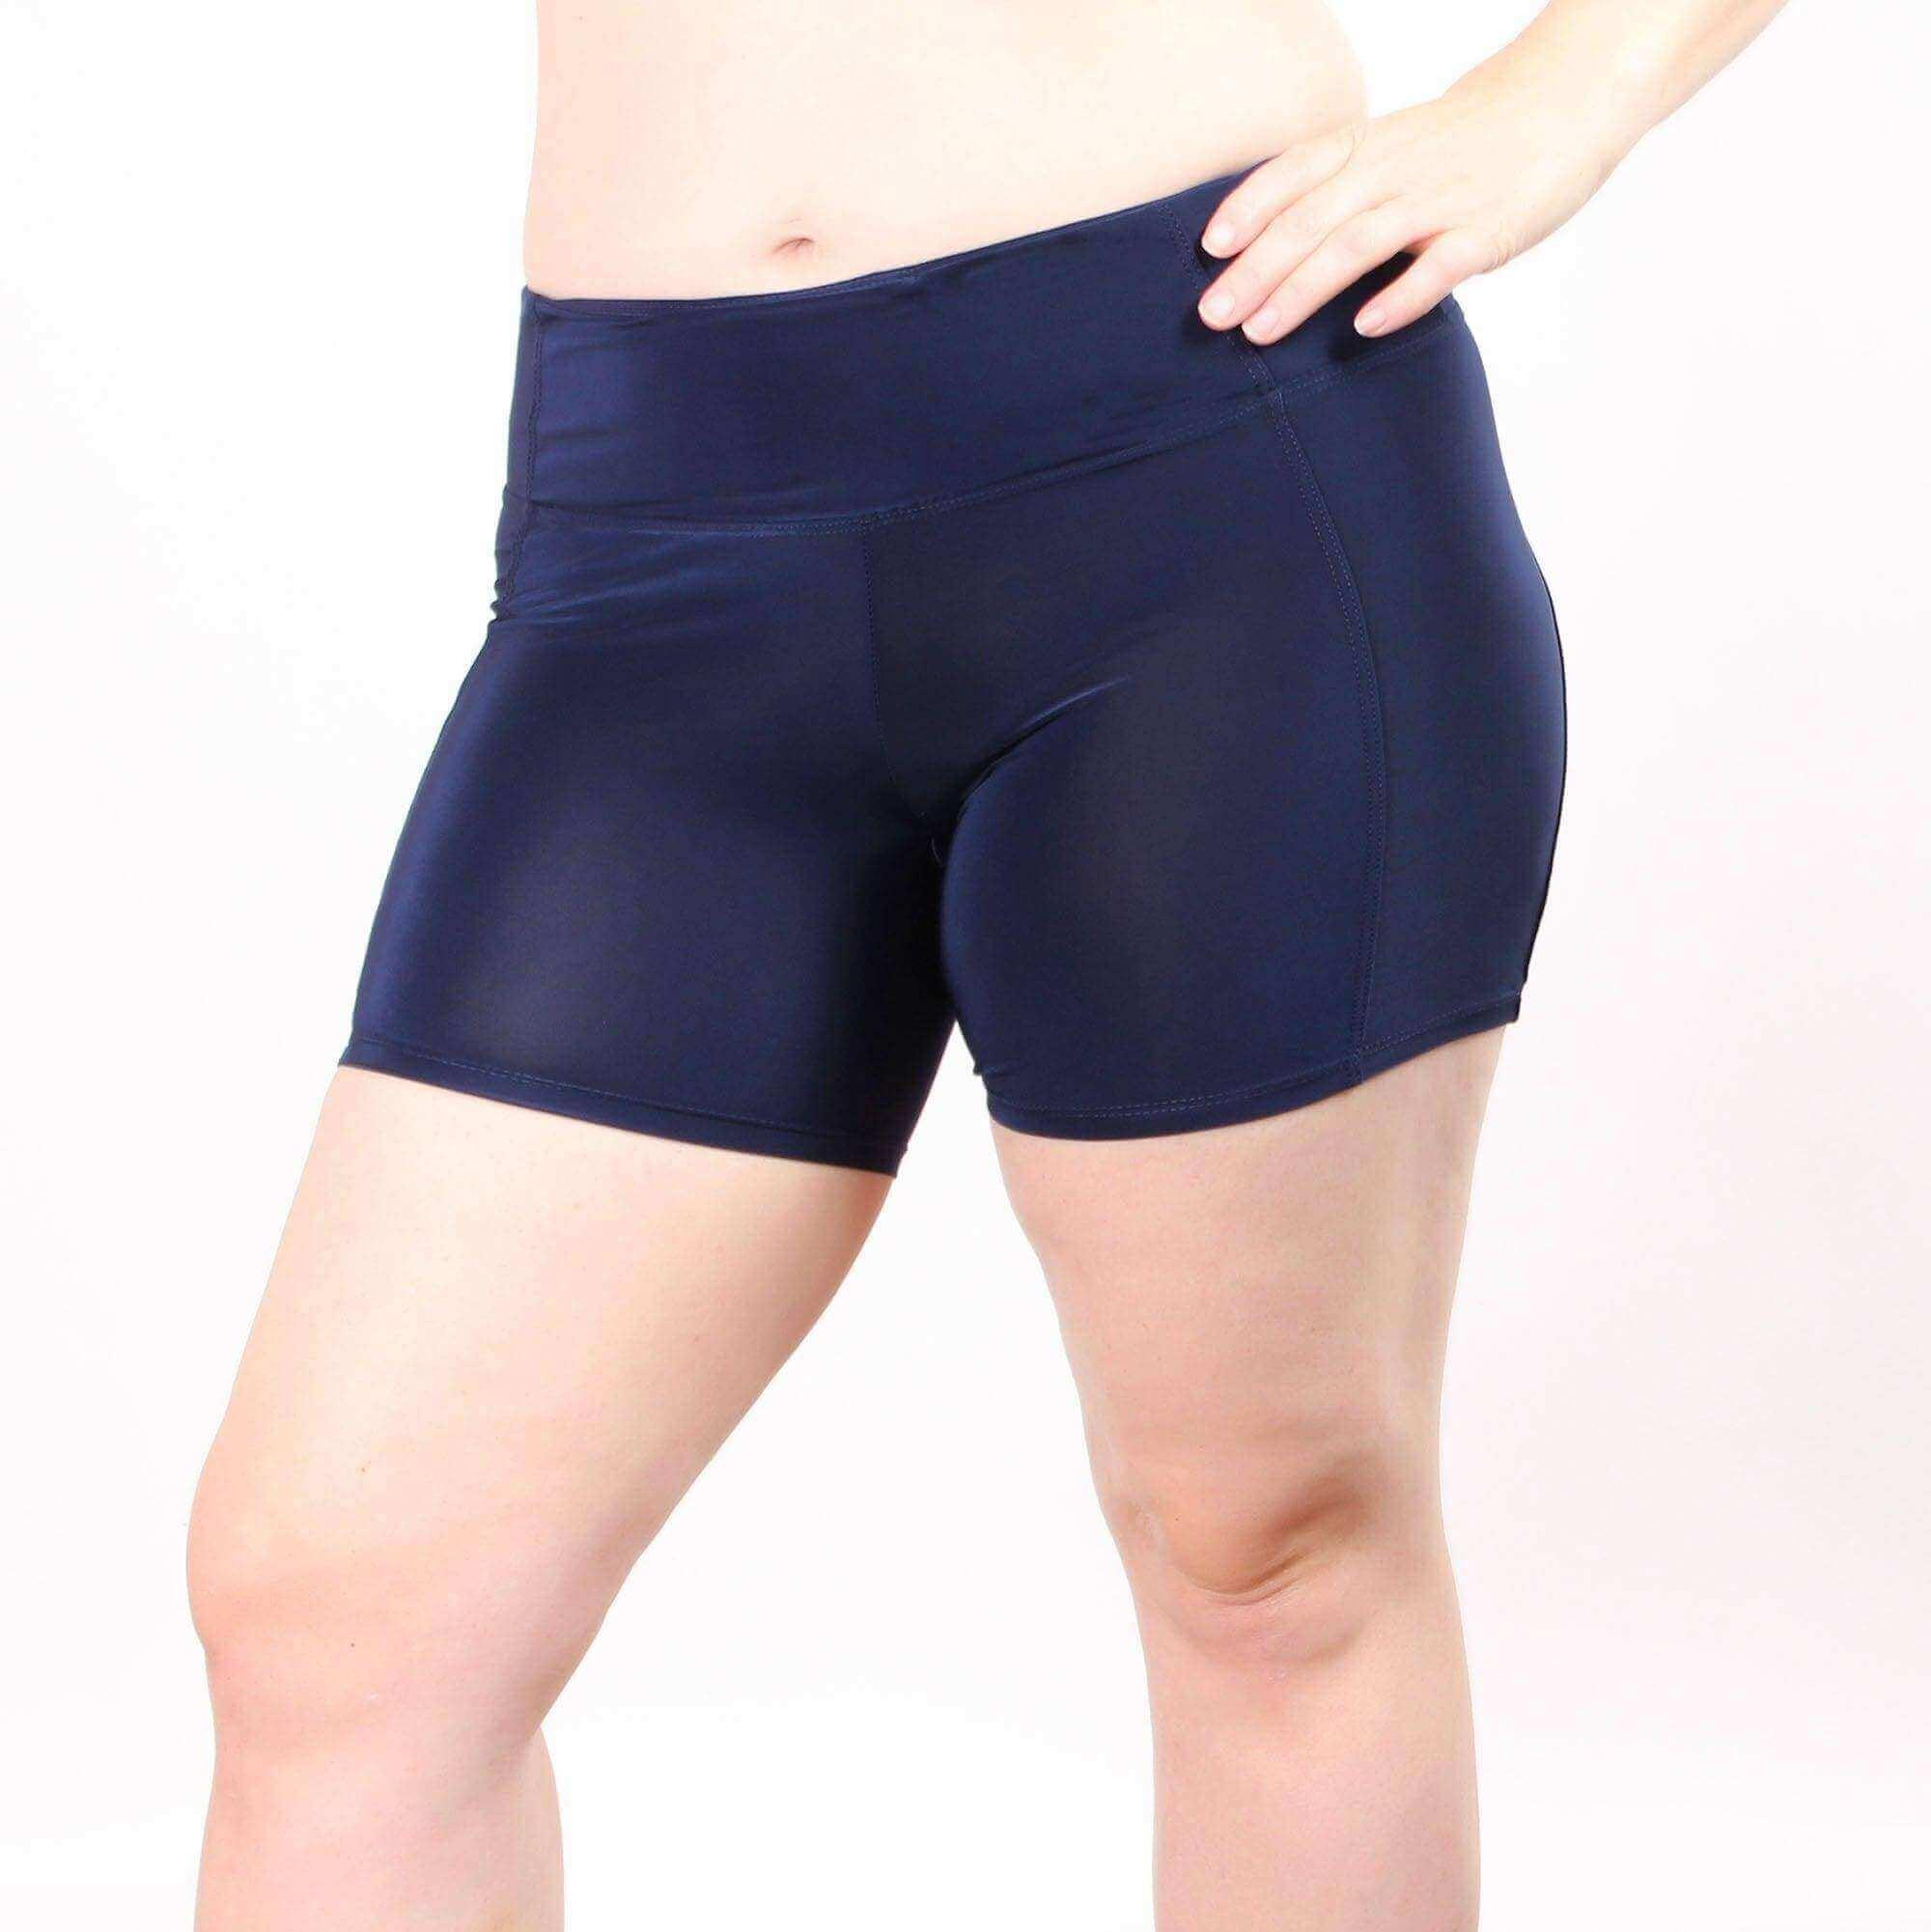 Women's Boxer Brief Underwear Short with Hidden Pocket for